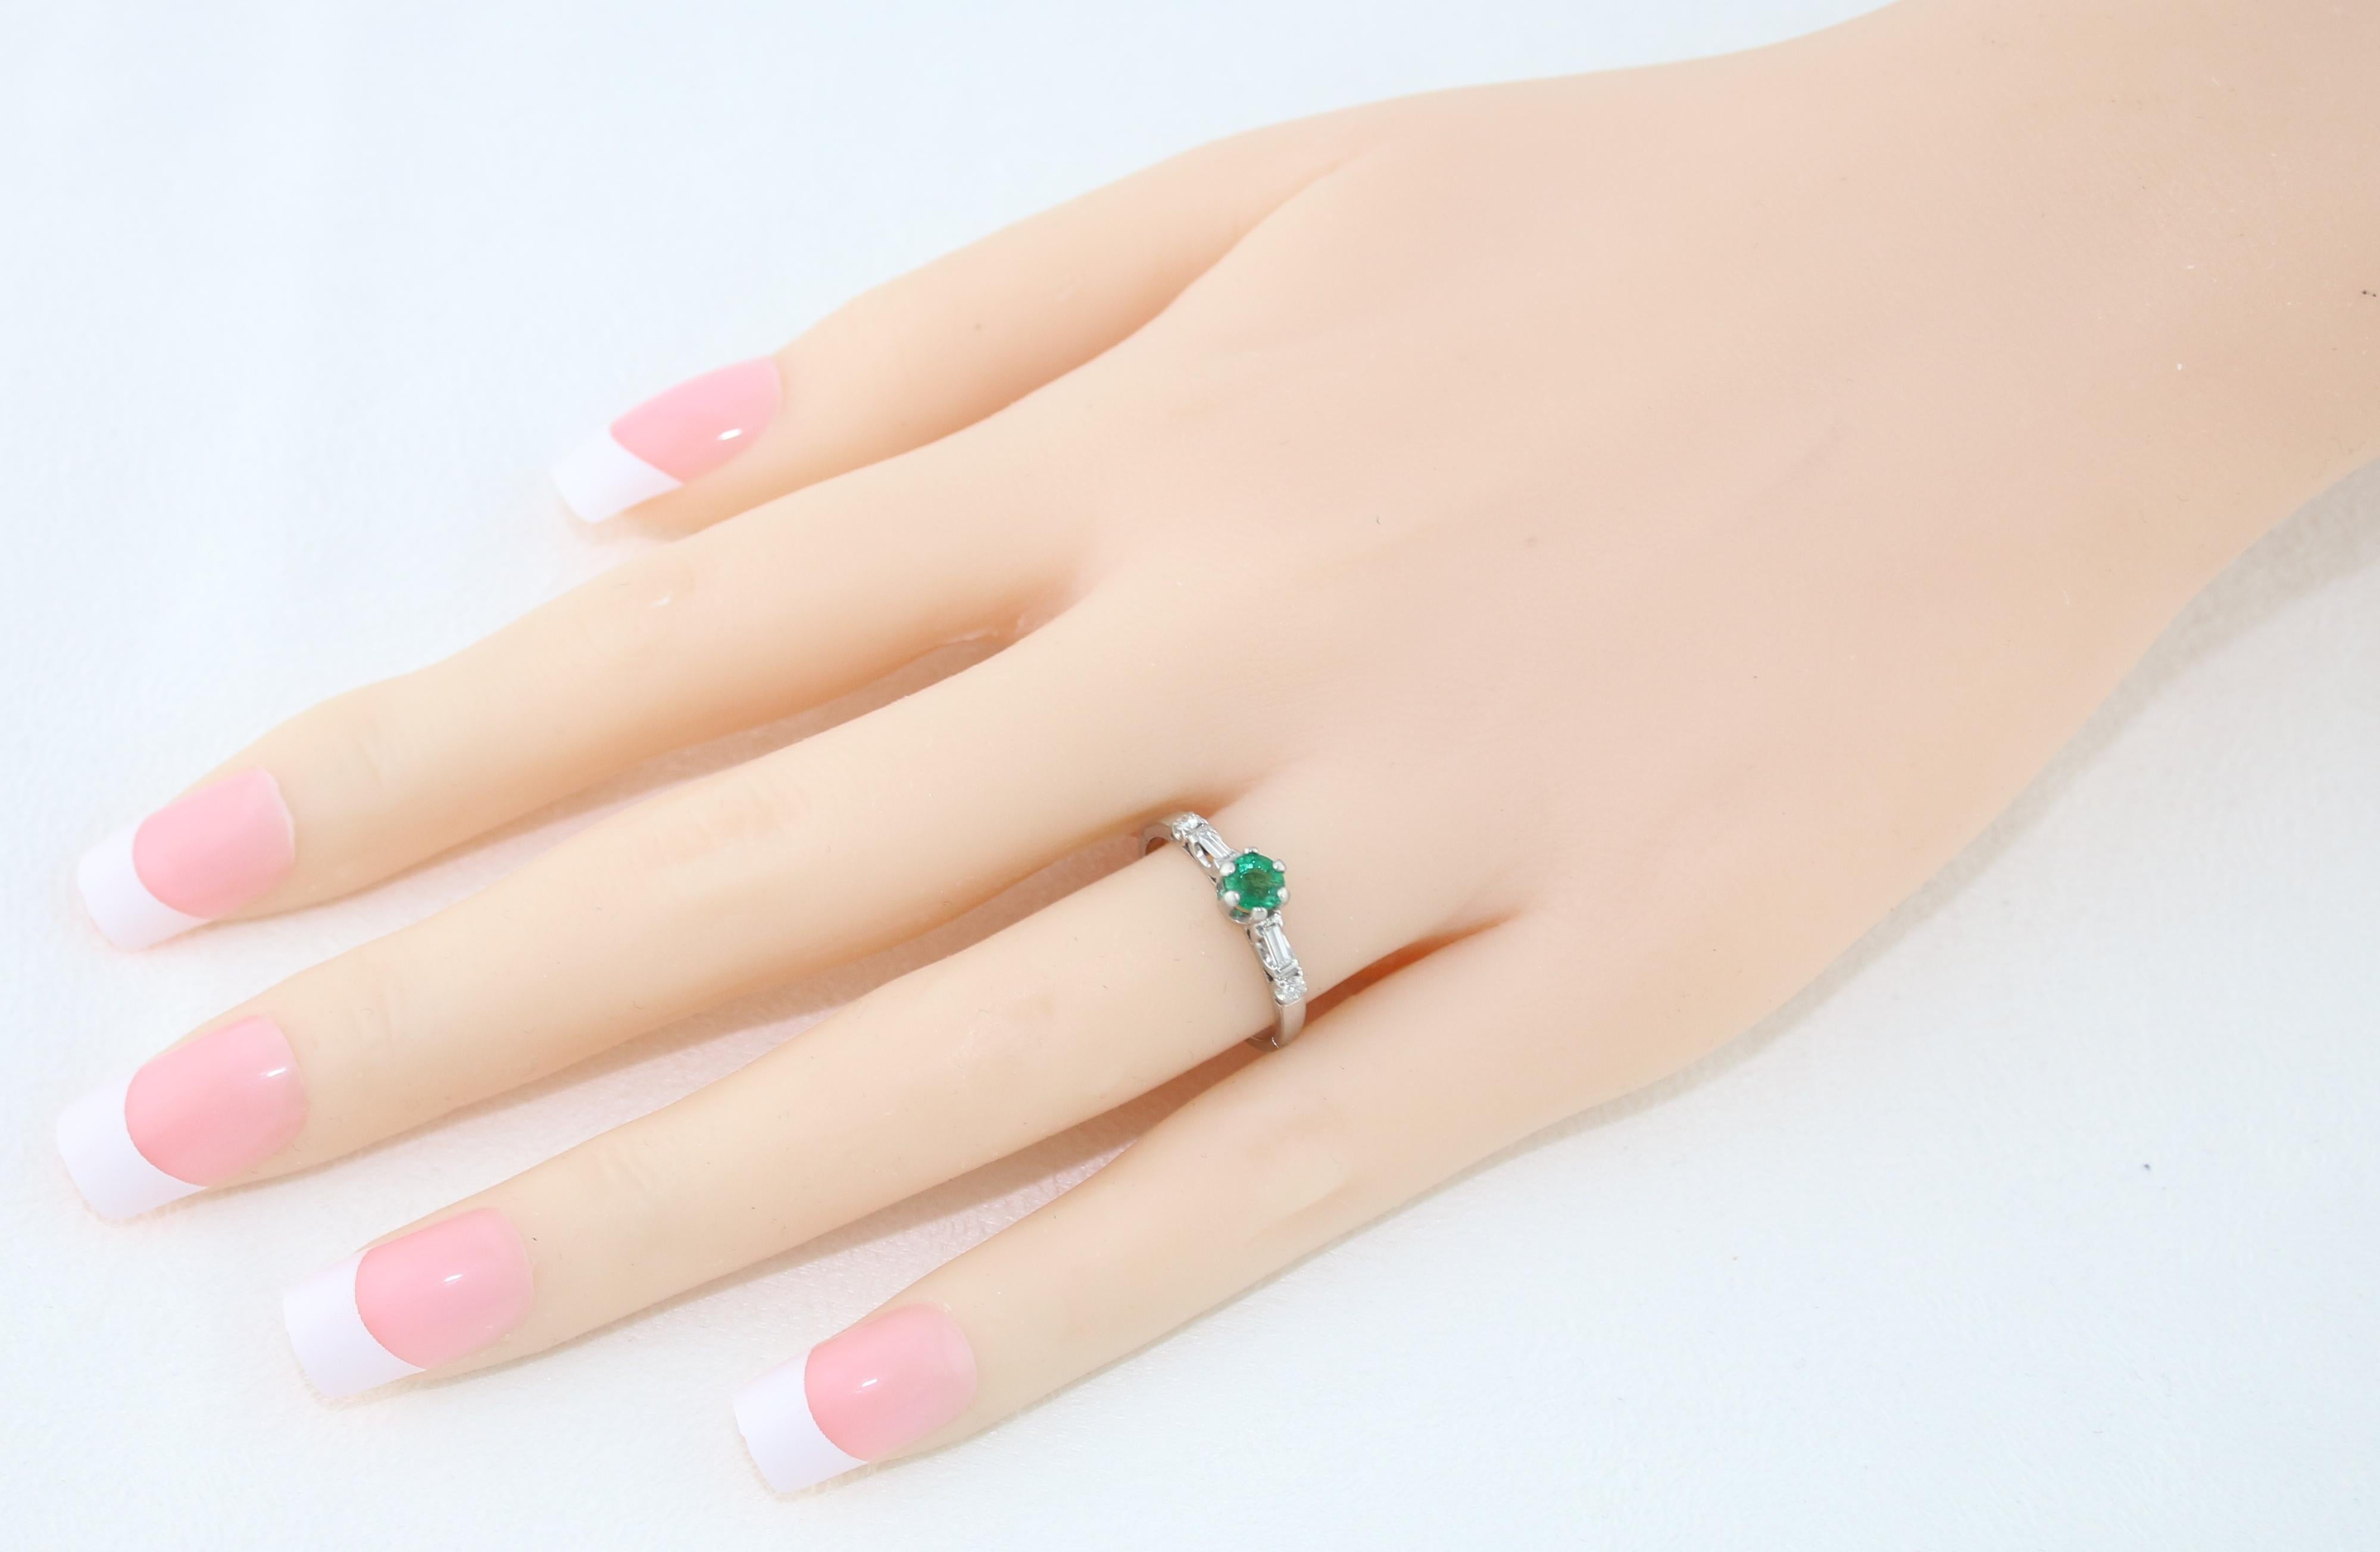 Round Cut 0.31 Carat Emerald Diamond Platinum Ring